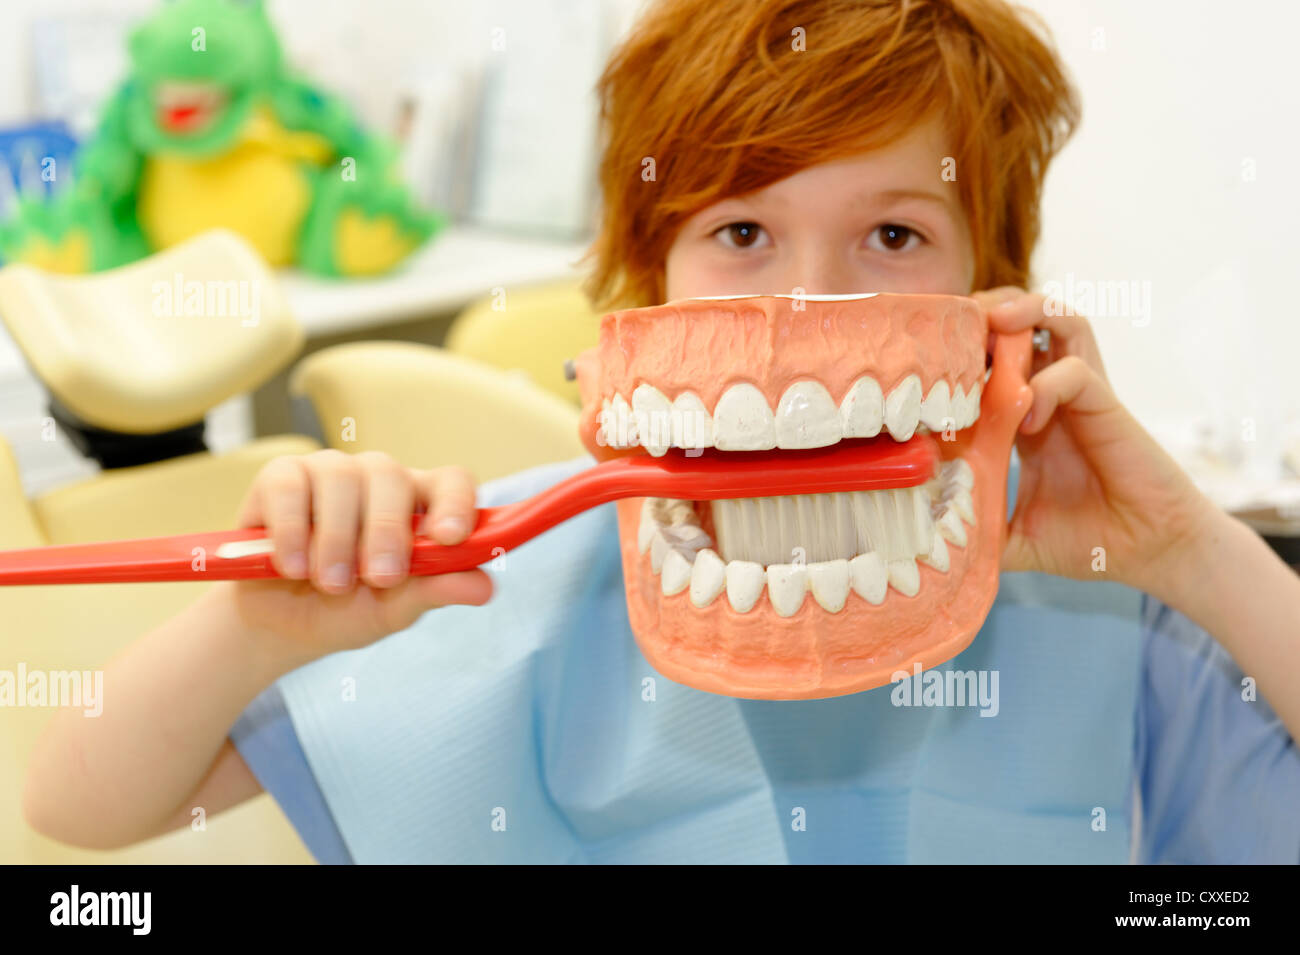 Niño en el dentista, recibir instrucciones para el cuidado dental en un modelo, higiene dental, cuidado dental, visita dental Foto de stock